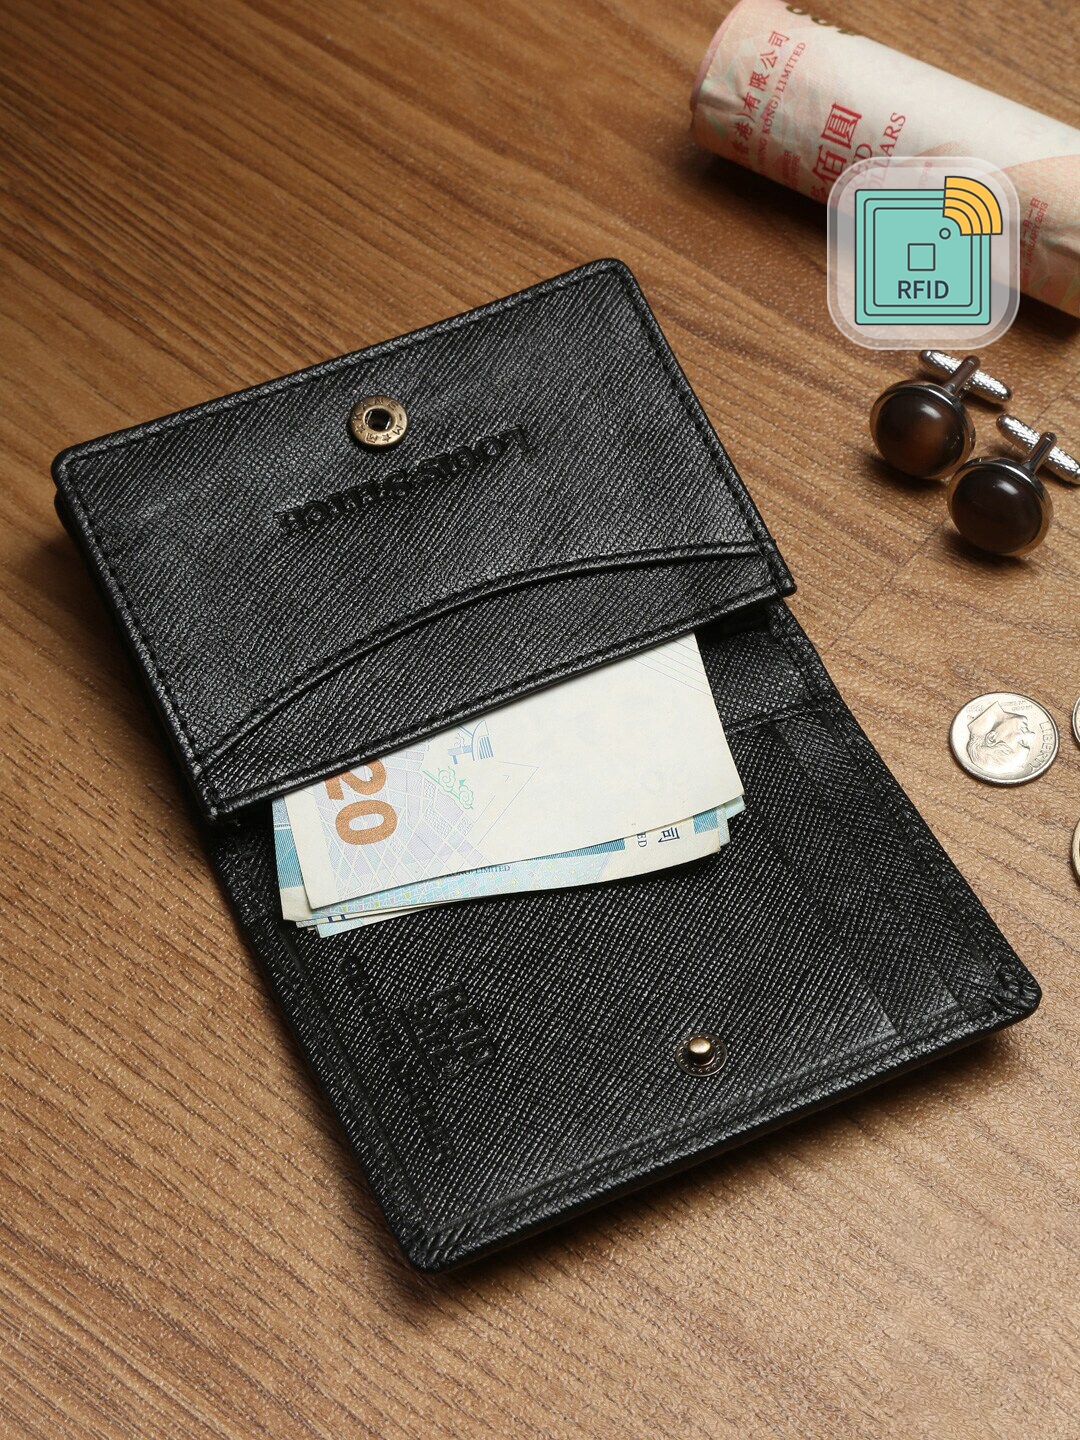 Arrow Men Black Leather Two Fold Wallet (Onesize) by Myntra